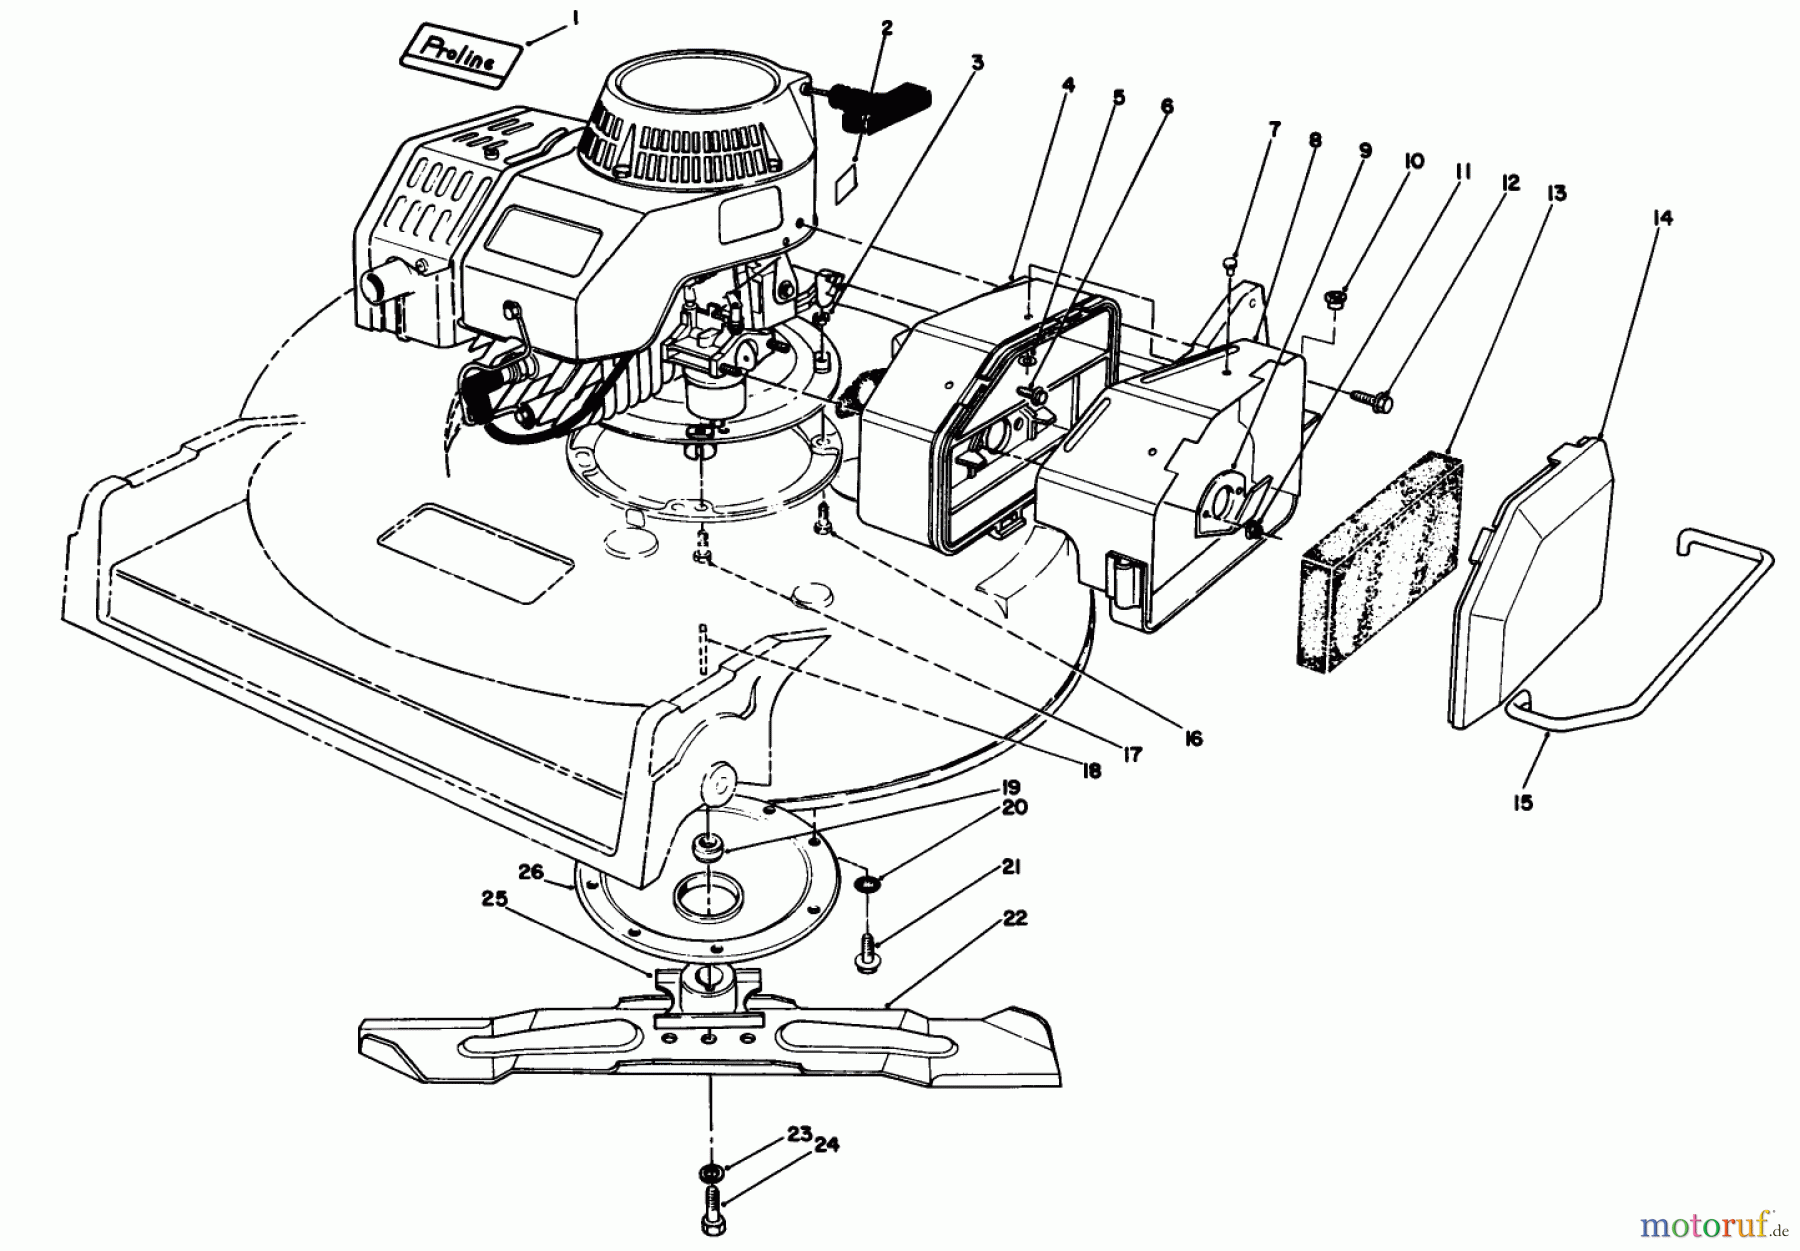  Toro Neu Mowers, Walk-Behind Seite 2 22035 - Toro Lawnmower, 1989 (9000001-9006453) ENGINE ASSEMBLY (MODEL 22030)